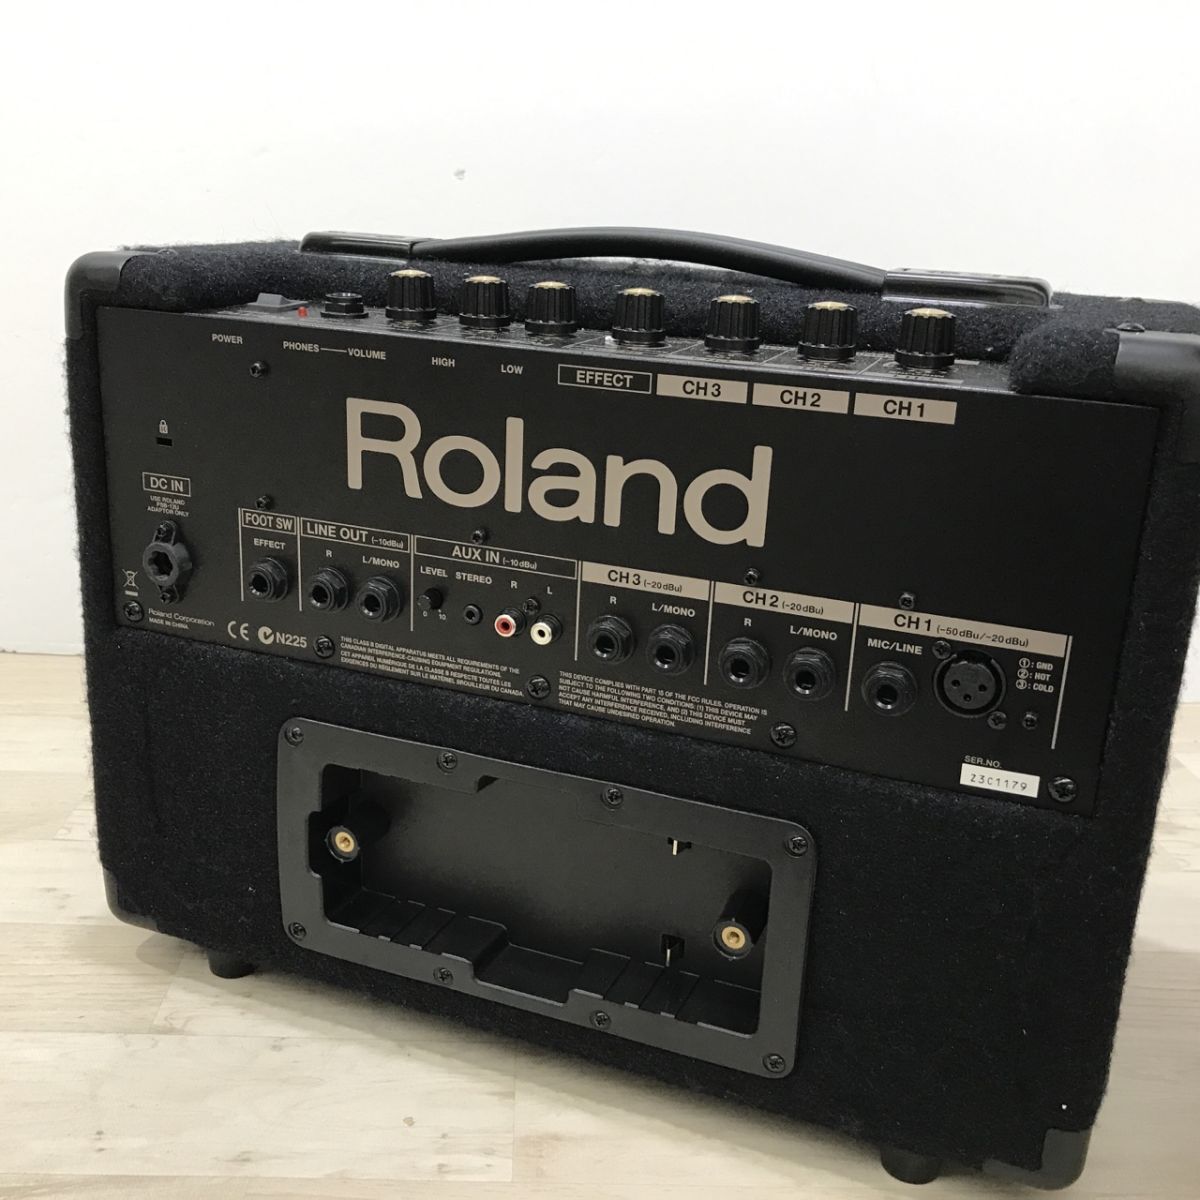 ROLAND Roland стерео клавиатура усилитель KC-110 батарейка box отсутствует [C4155]